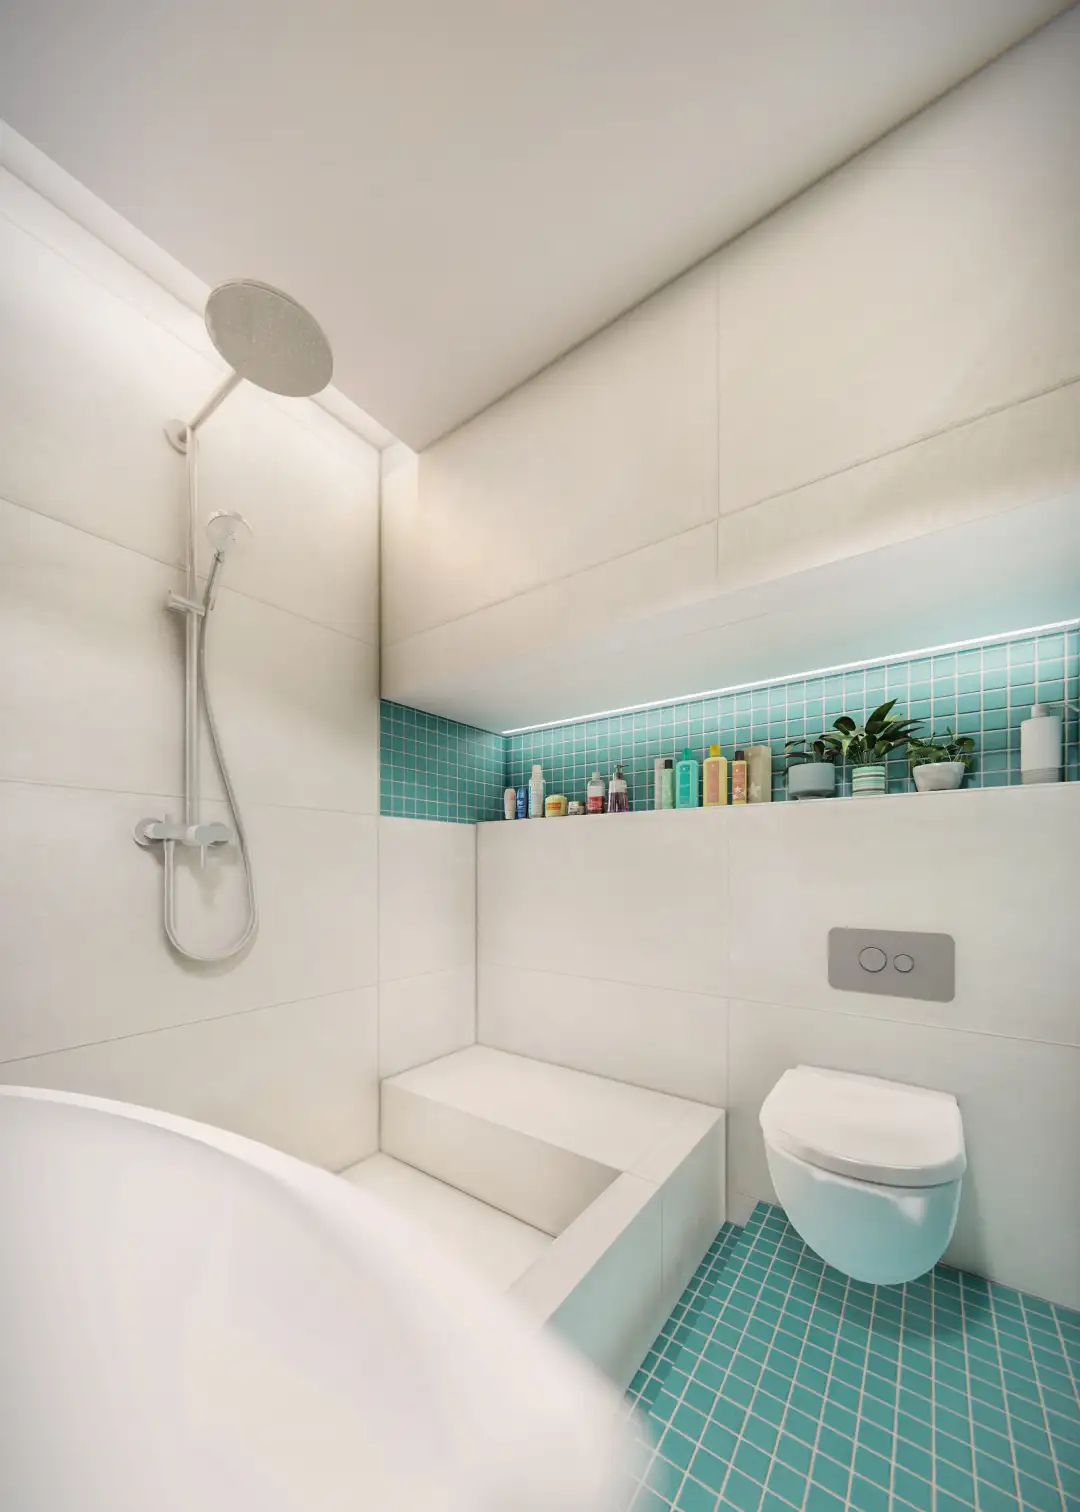 render bath room, a villa near a neighbour